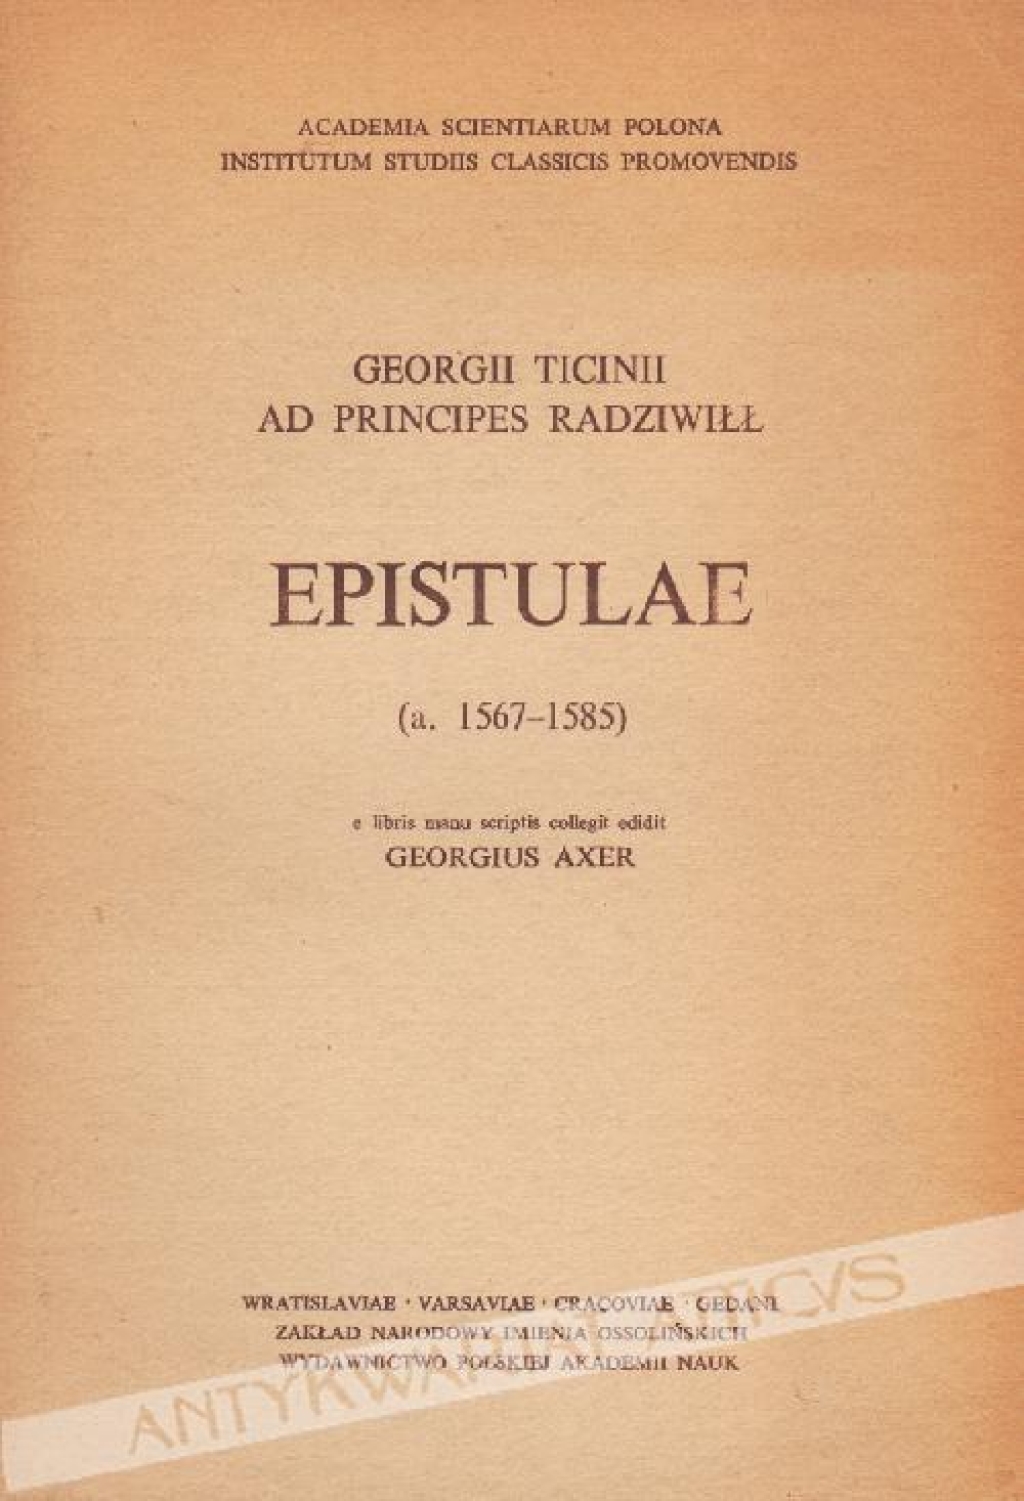 Georgii Ticinii ad Principes Radziwiłł. Epistulae (a. 1567-1585)